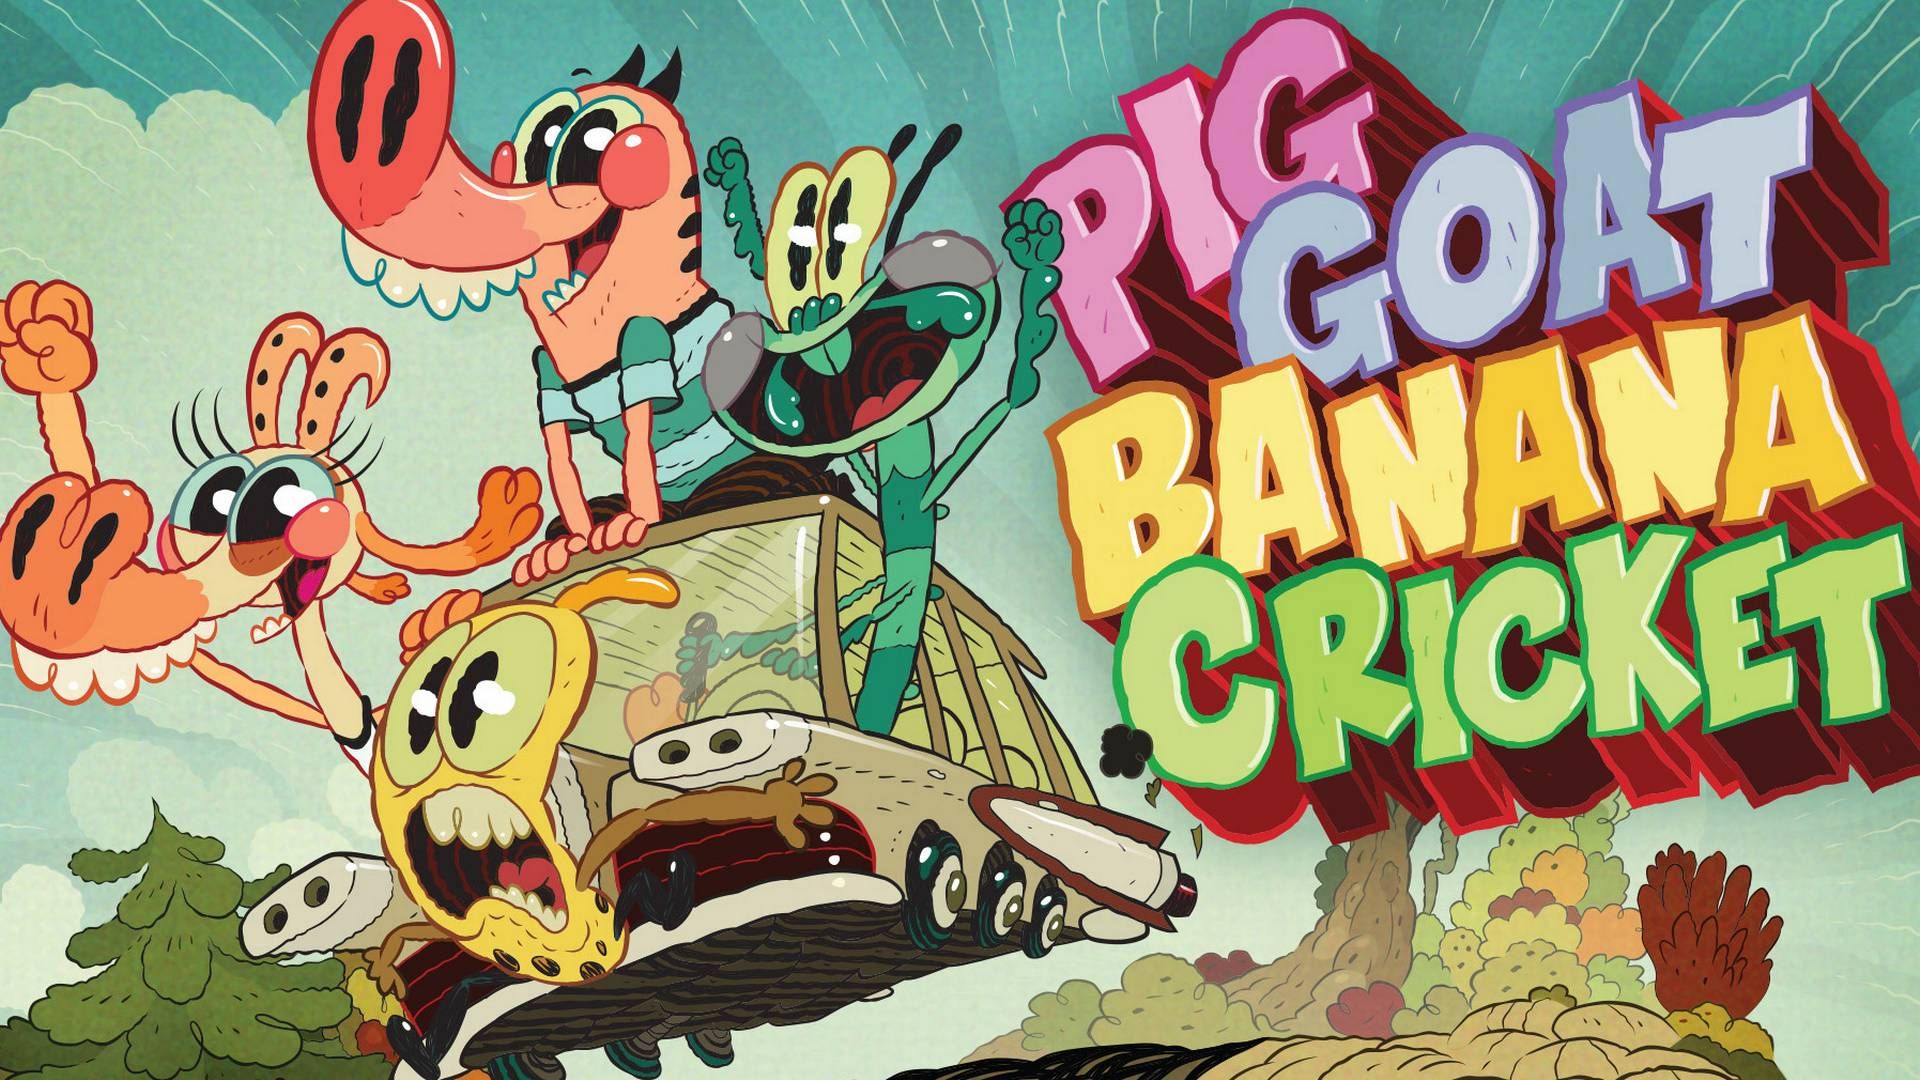 Pig Goat Banana Cricket er blandt programmerne på Nicktoons. | Foto: PR/Viacom